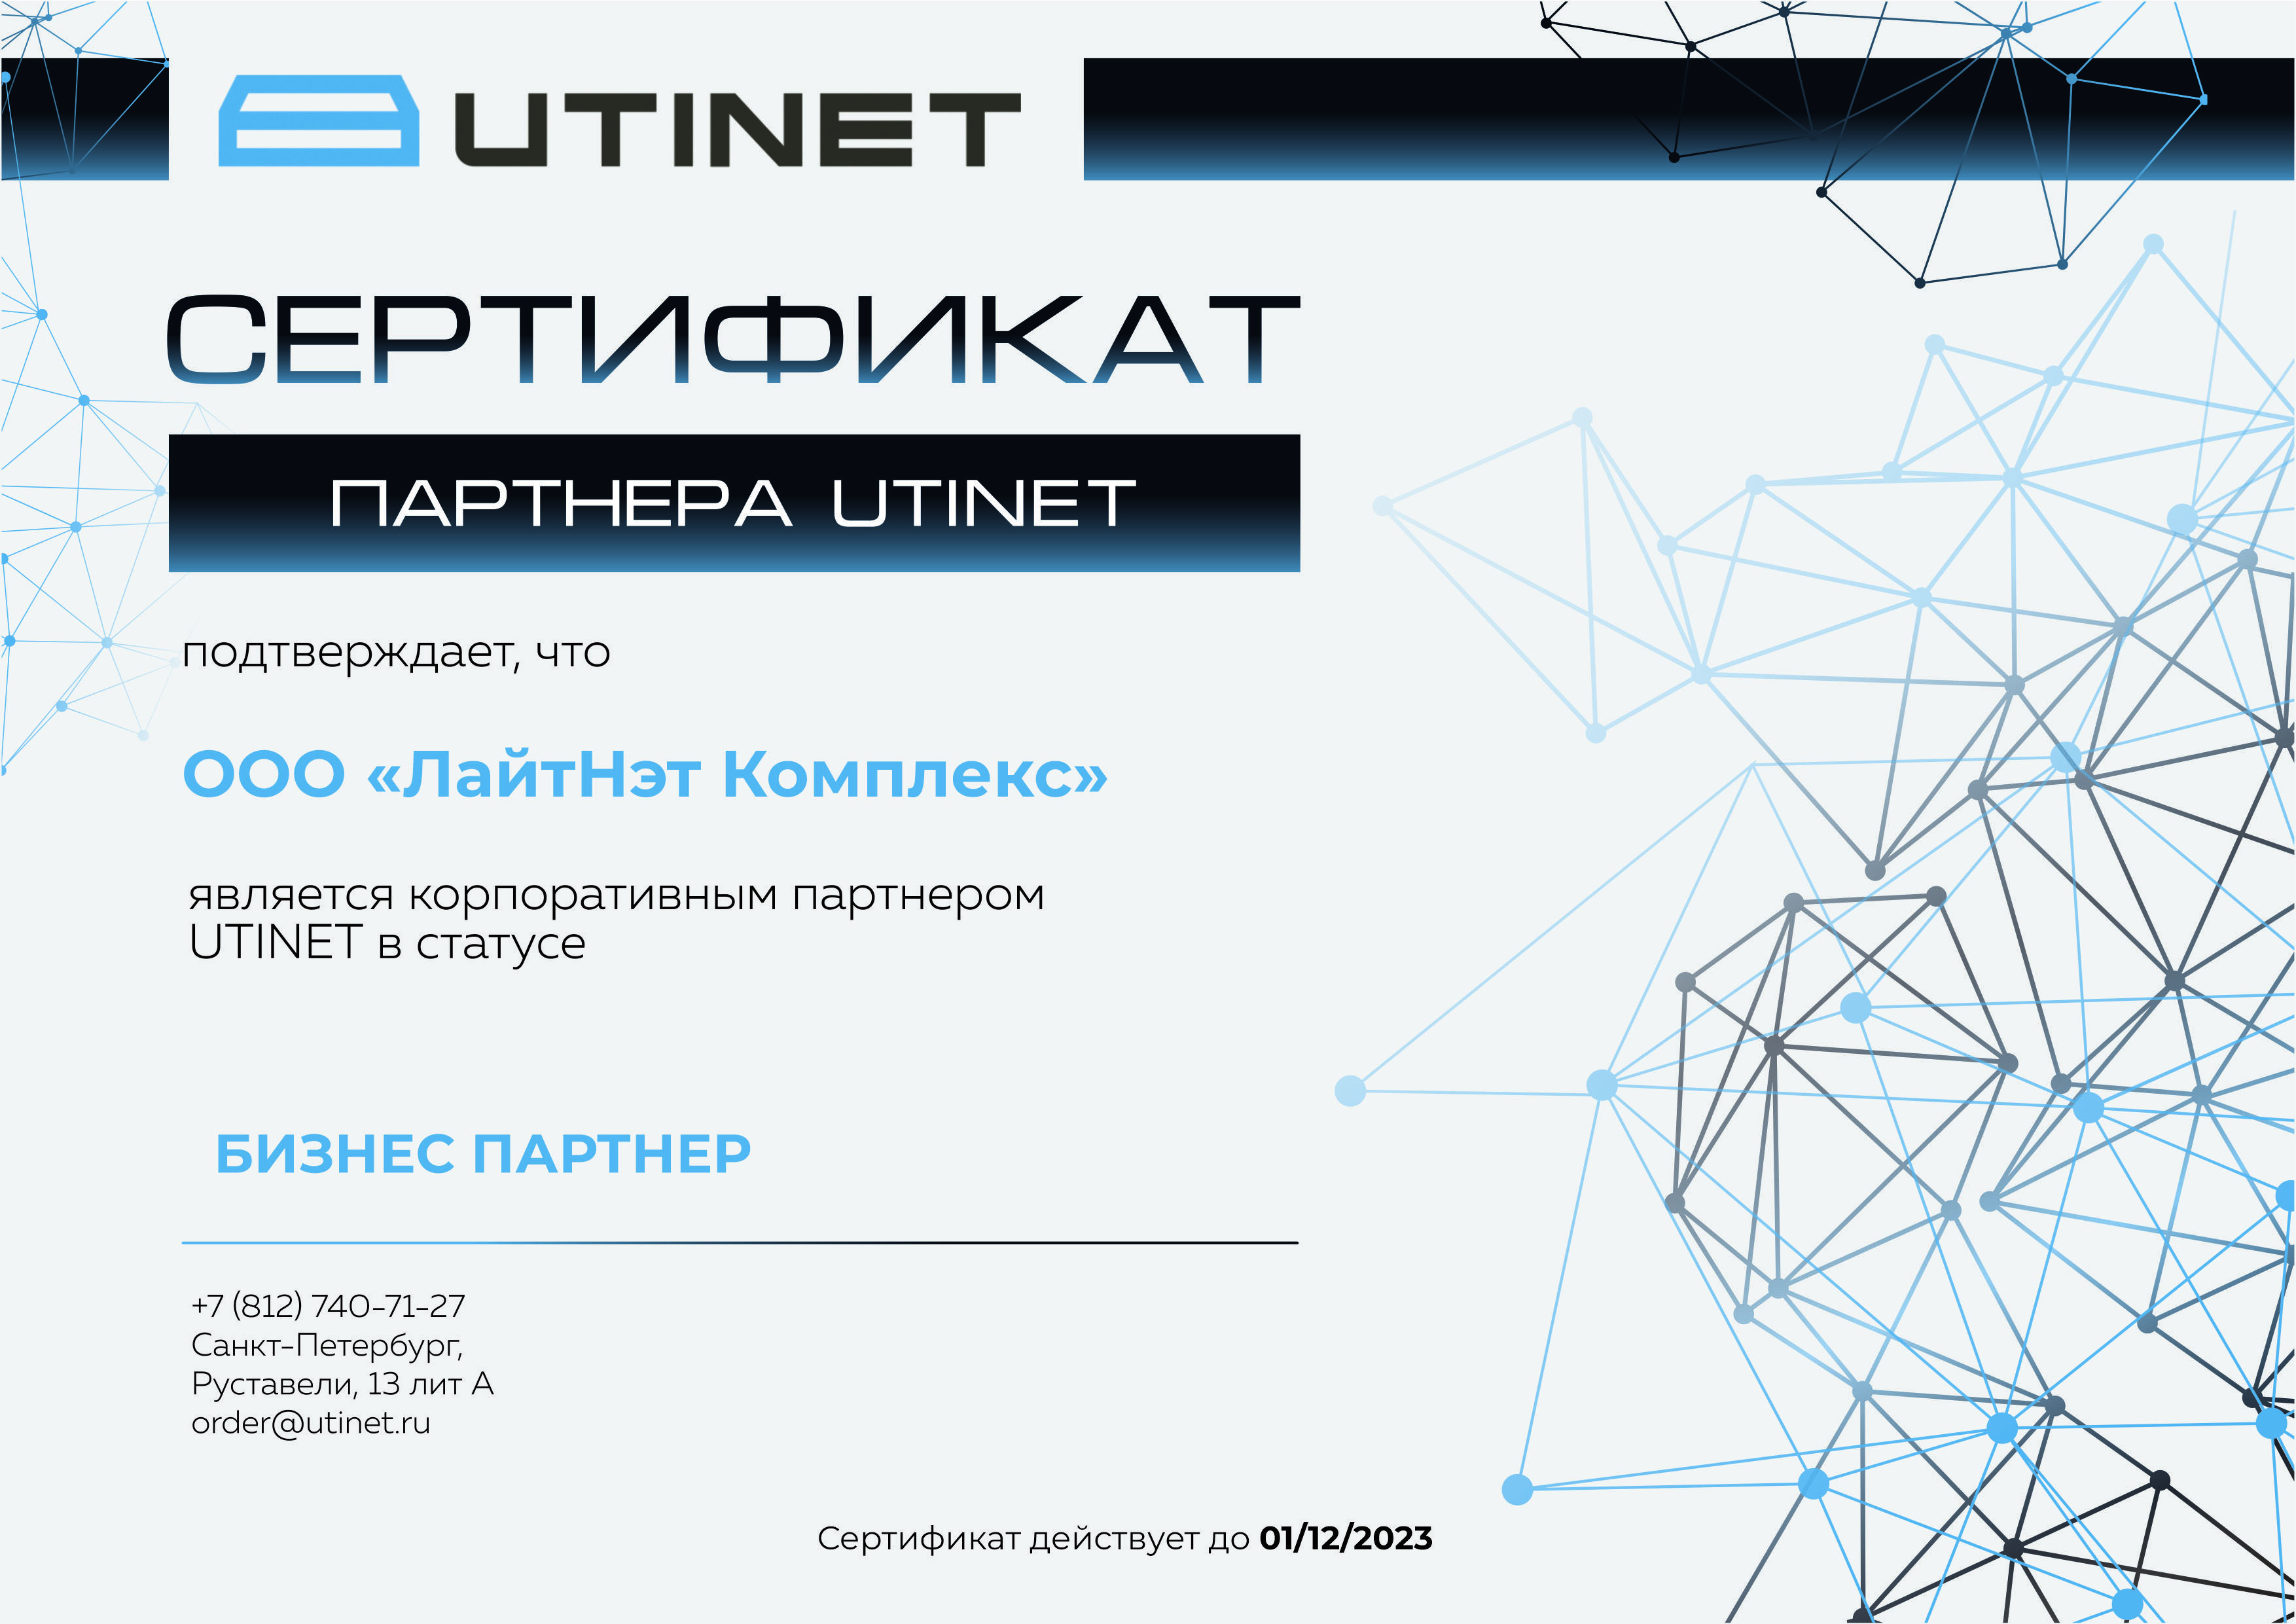 UTINET - Бизнес партнер